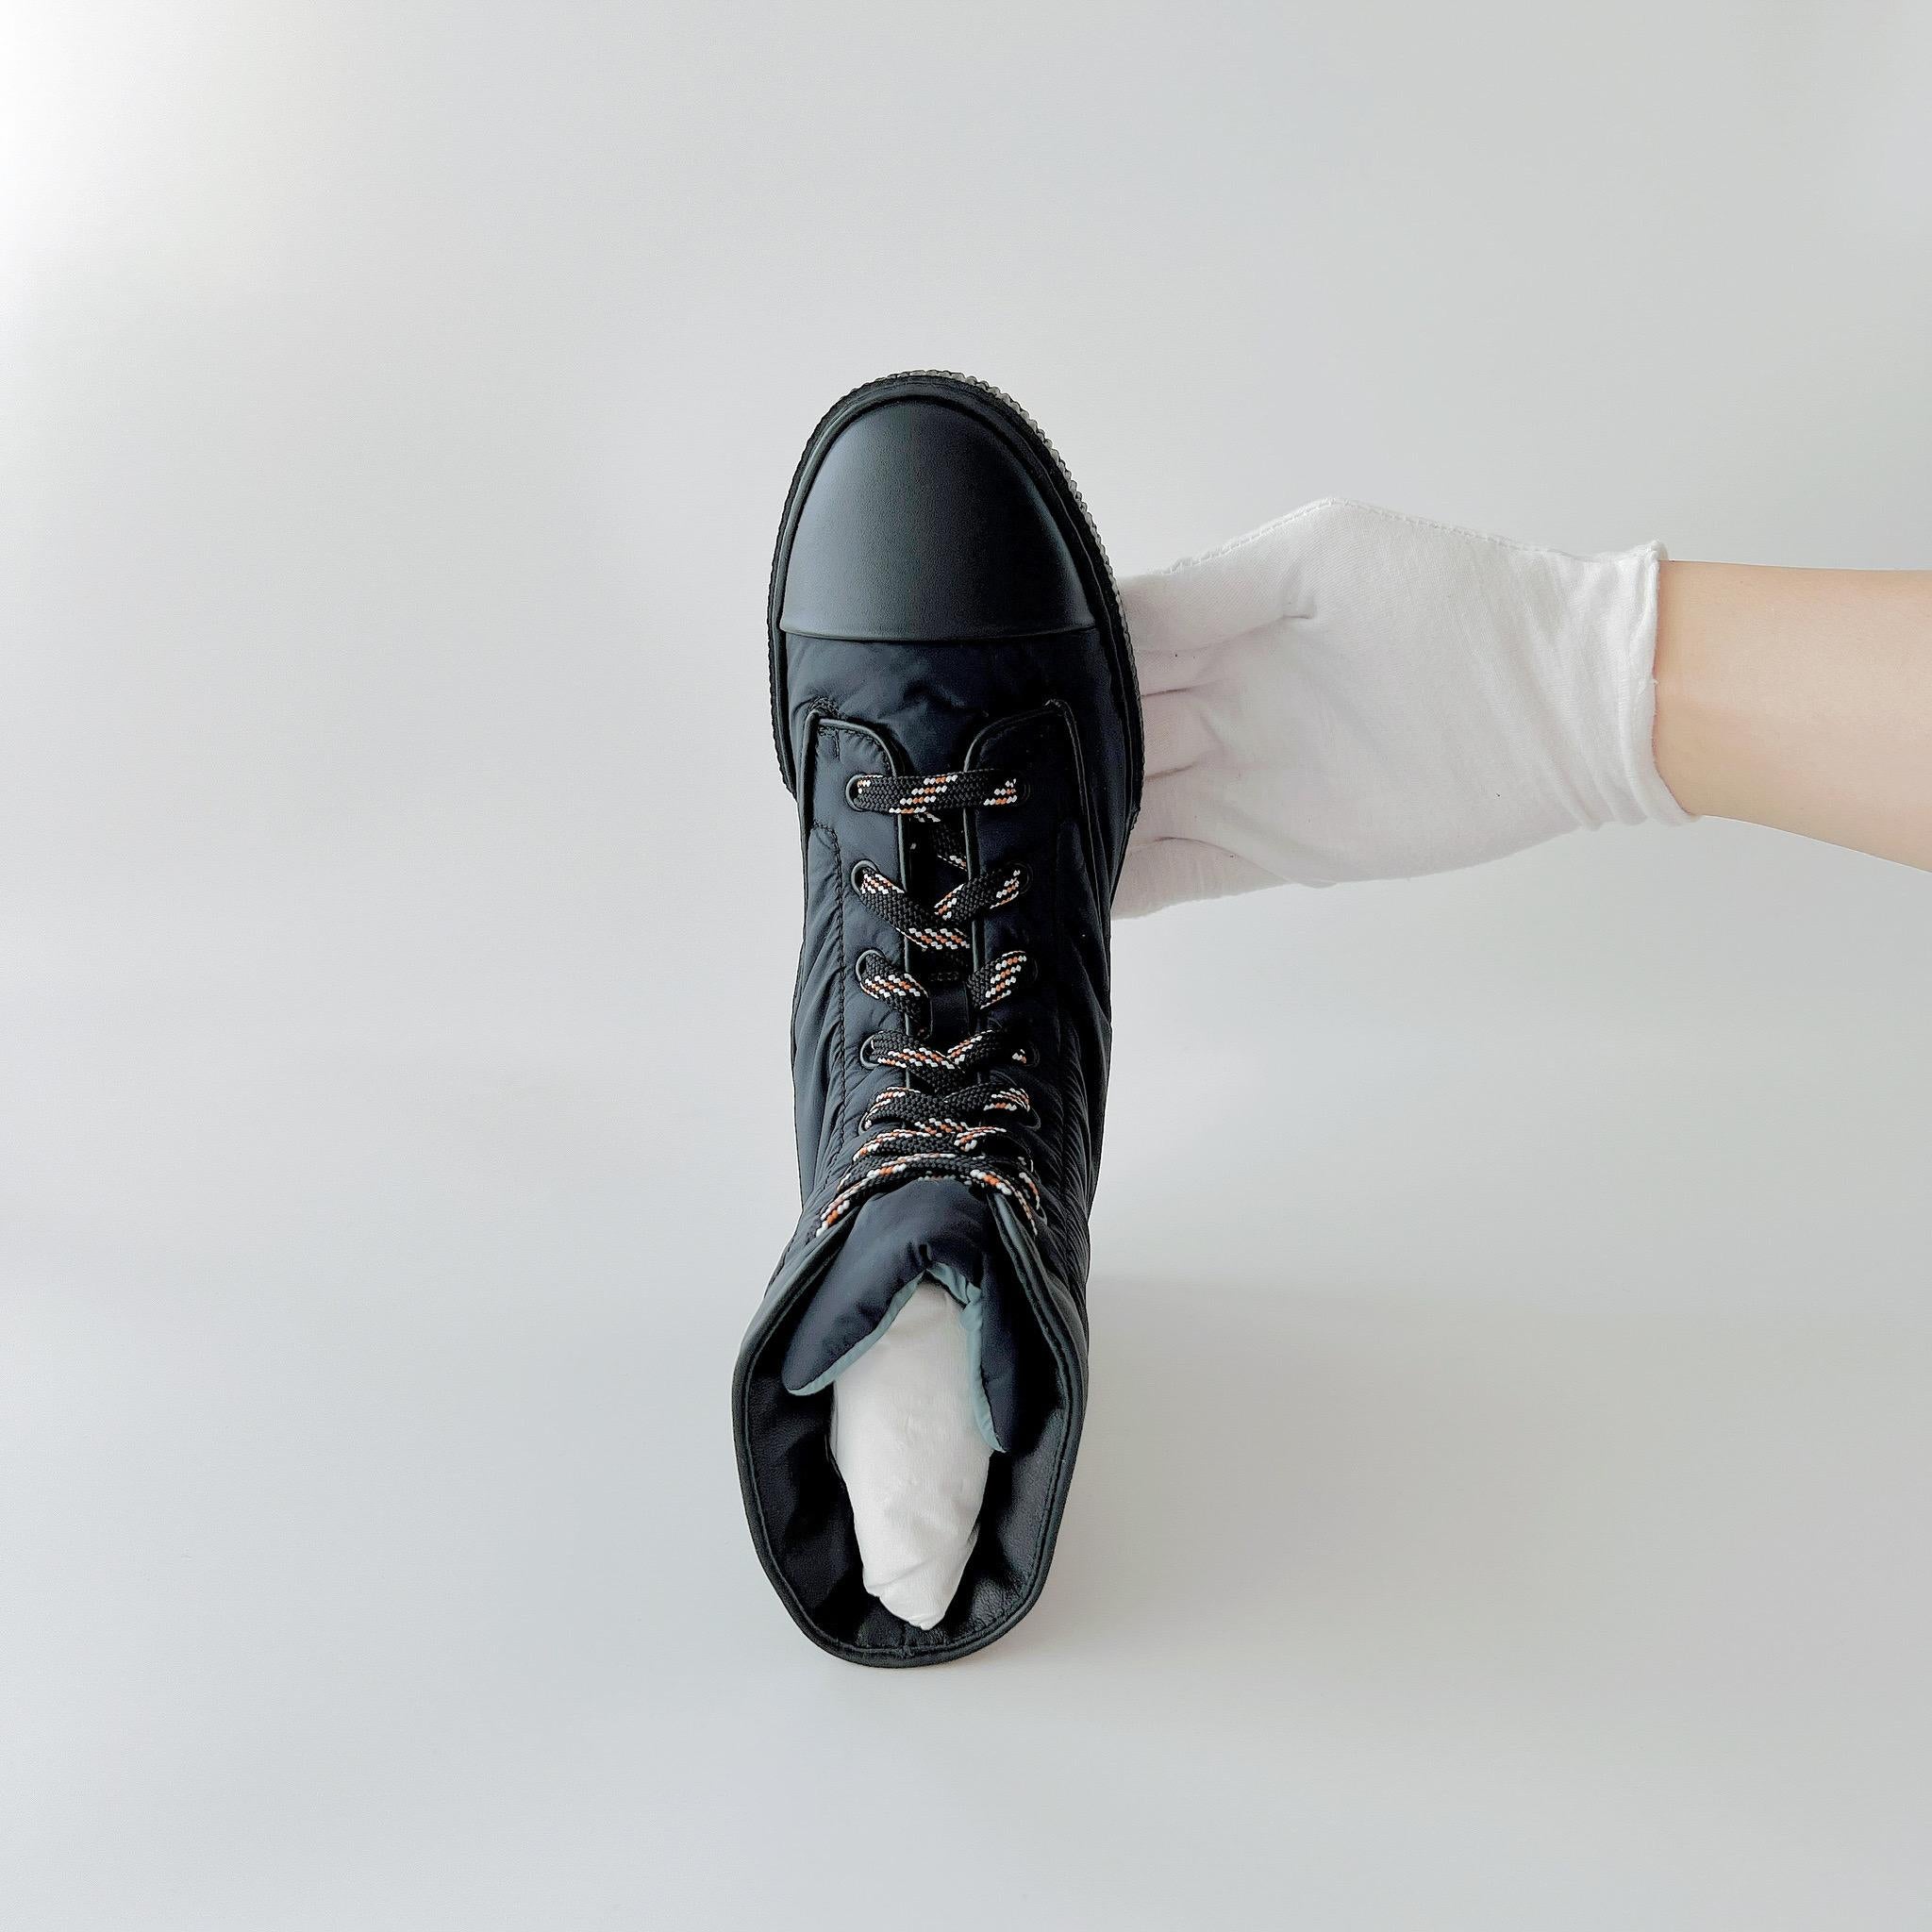 Achetez cette paire de bottines Hermes Fresh dans un tissu parachute doux et confortable, parfait pour garder vos pieds au chaud pendant l'hiver. Ces bottes sont modernes et élégantes, tout en étant robustes pour vos voyages en hiver. Les nouvelles